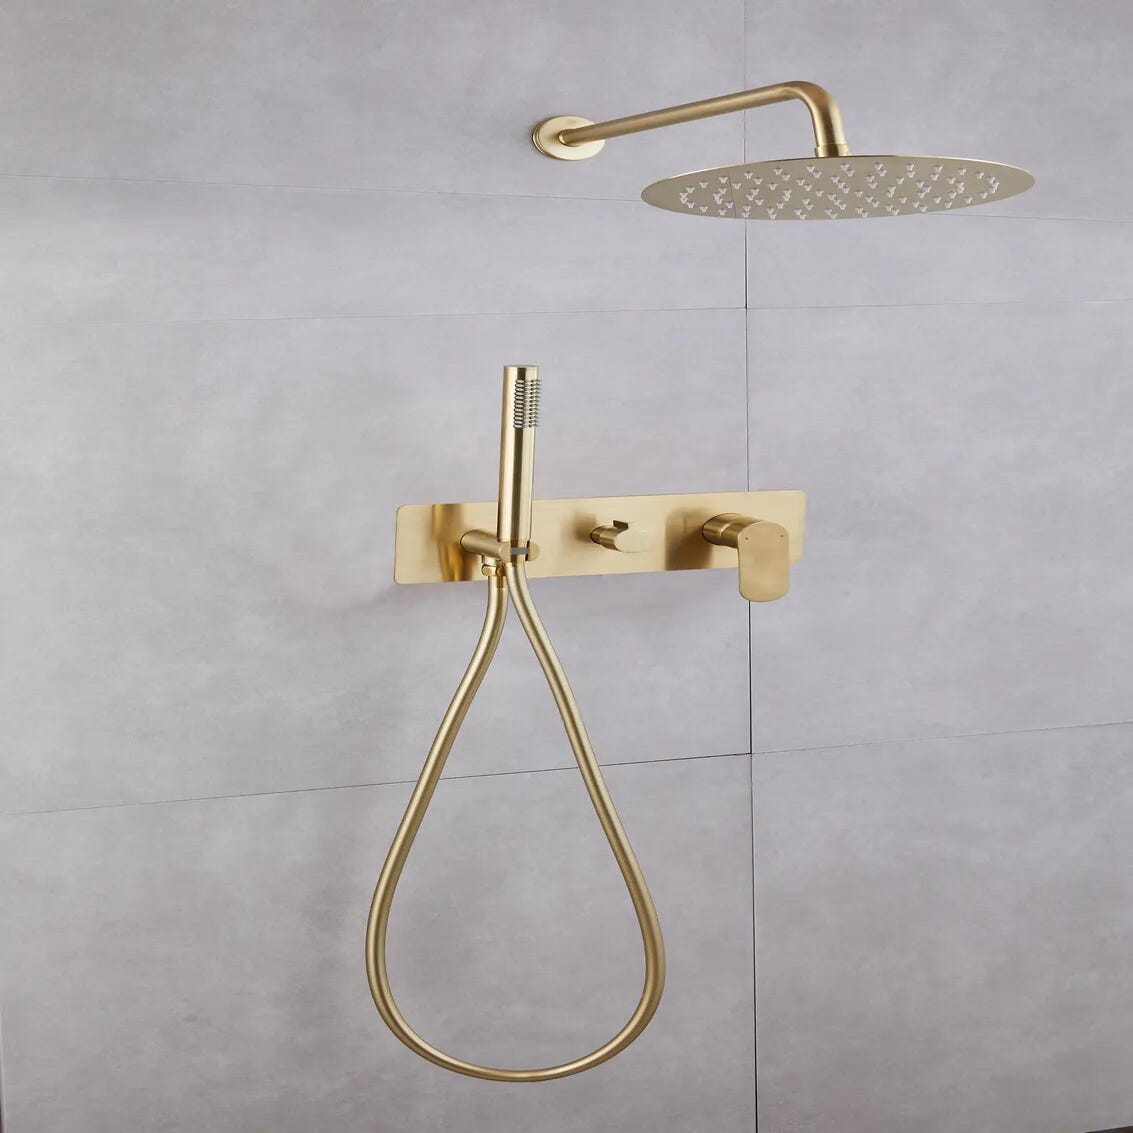 Comprar Conjunto de ducha empotrado termostatico dorado cepillado online